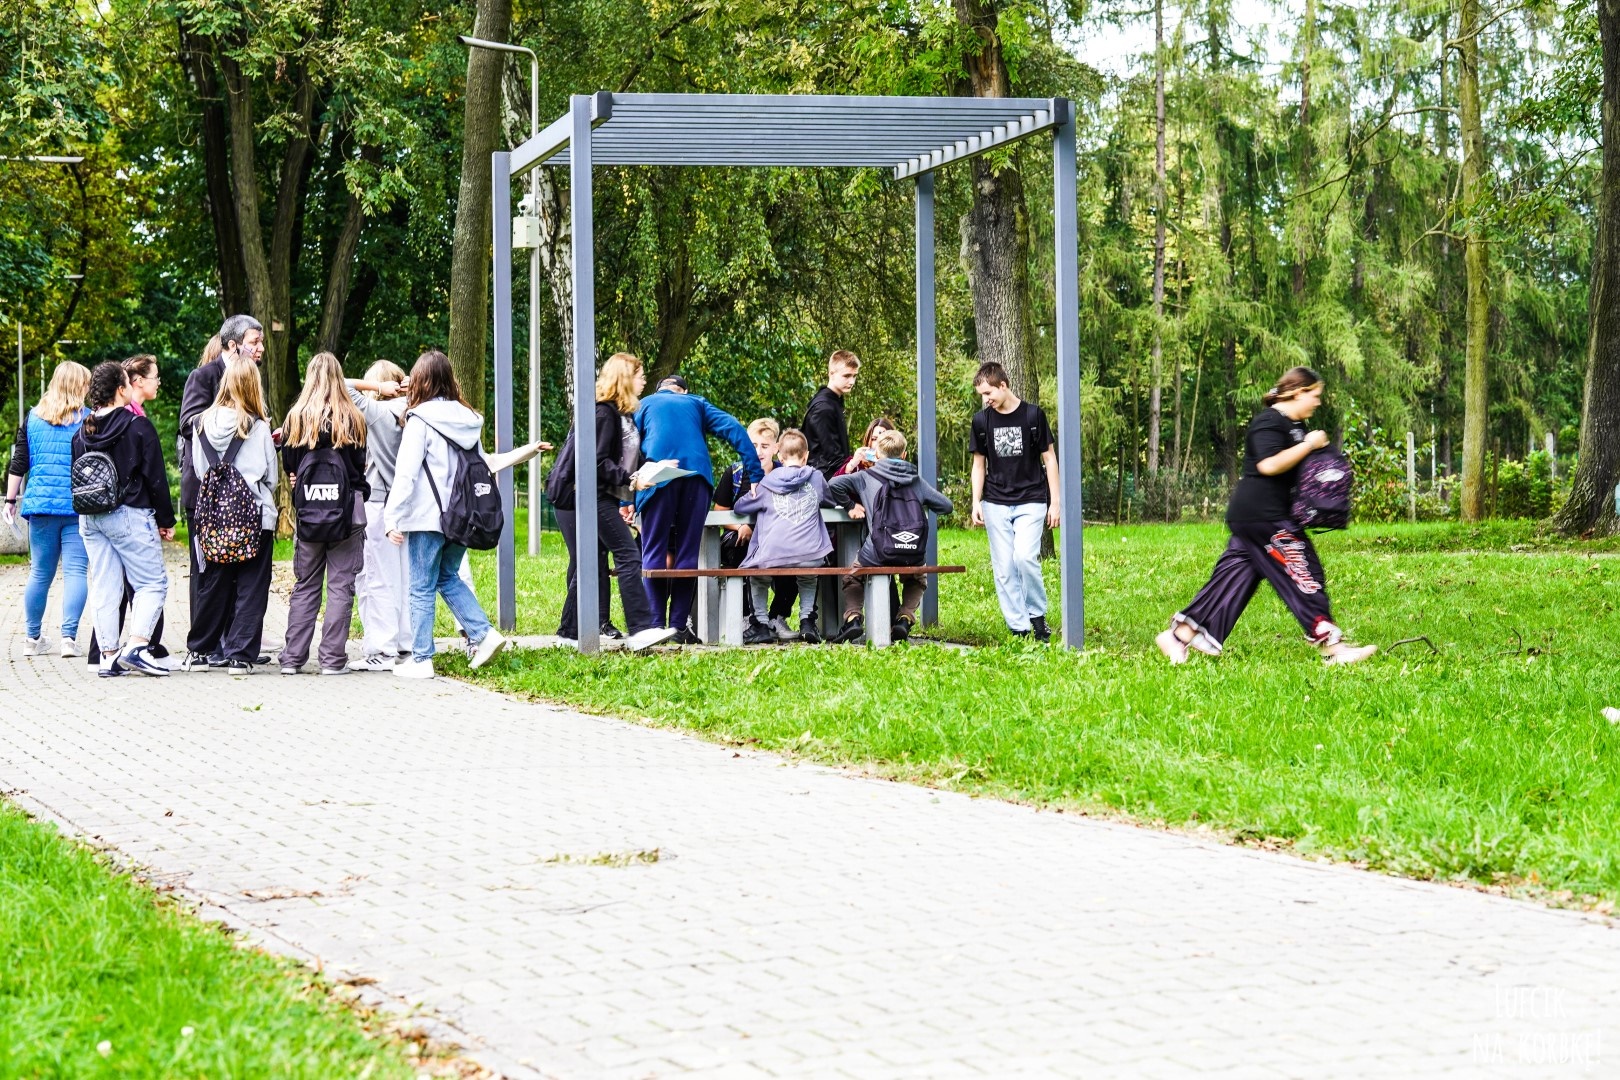 Zdjęcie przedstawiające grupę ludzi w parku. Jedni stoją przy pergoli metalowej drudzy siedzą pod nią przy stoliku. W tle widać drzewa parkowe